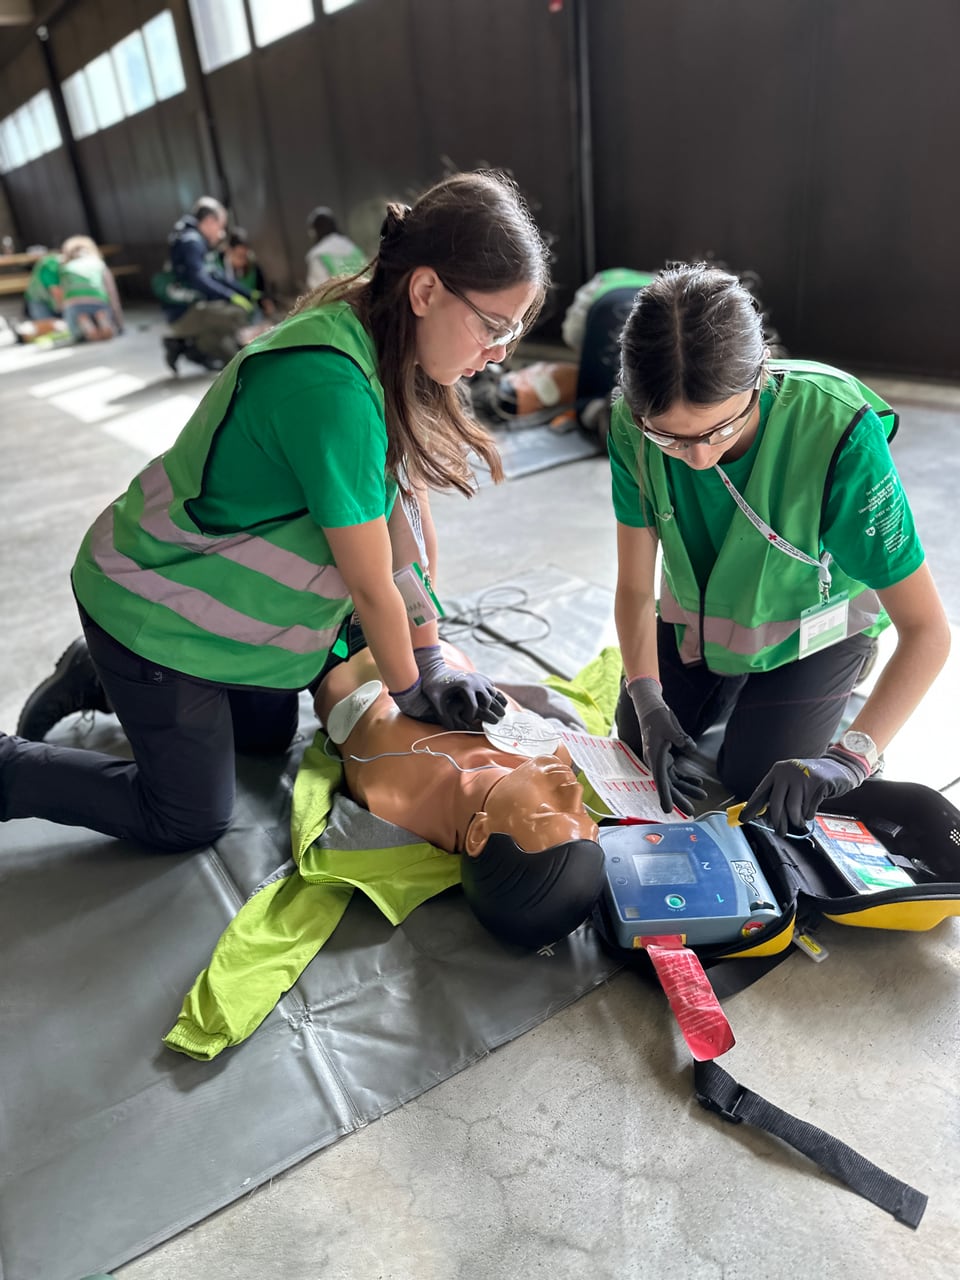 Zwei Schülerinnen üben an einer Reanimationspuppe wie man den AED anwendet.